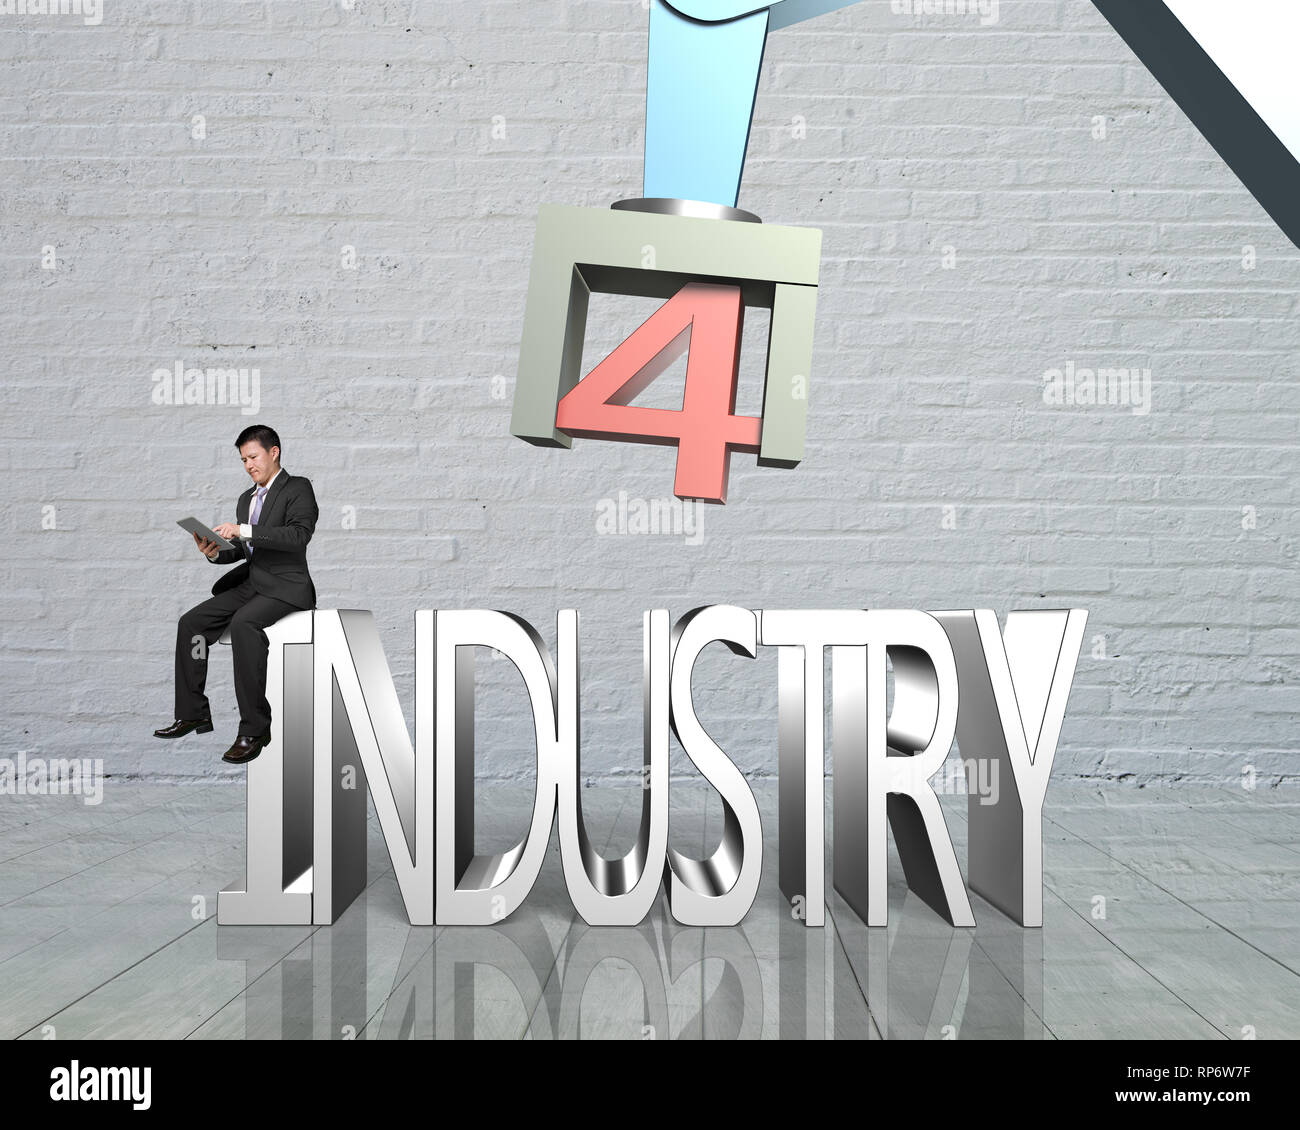 Concept de l'industrie 4.0. Homme assis sur le texte 3D de l'industrie 4.0, à l'aide d'un comprimé à l'bras robot de contrôle. Banque D'Images